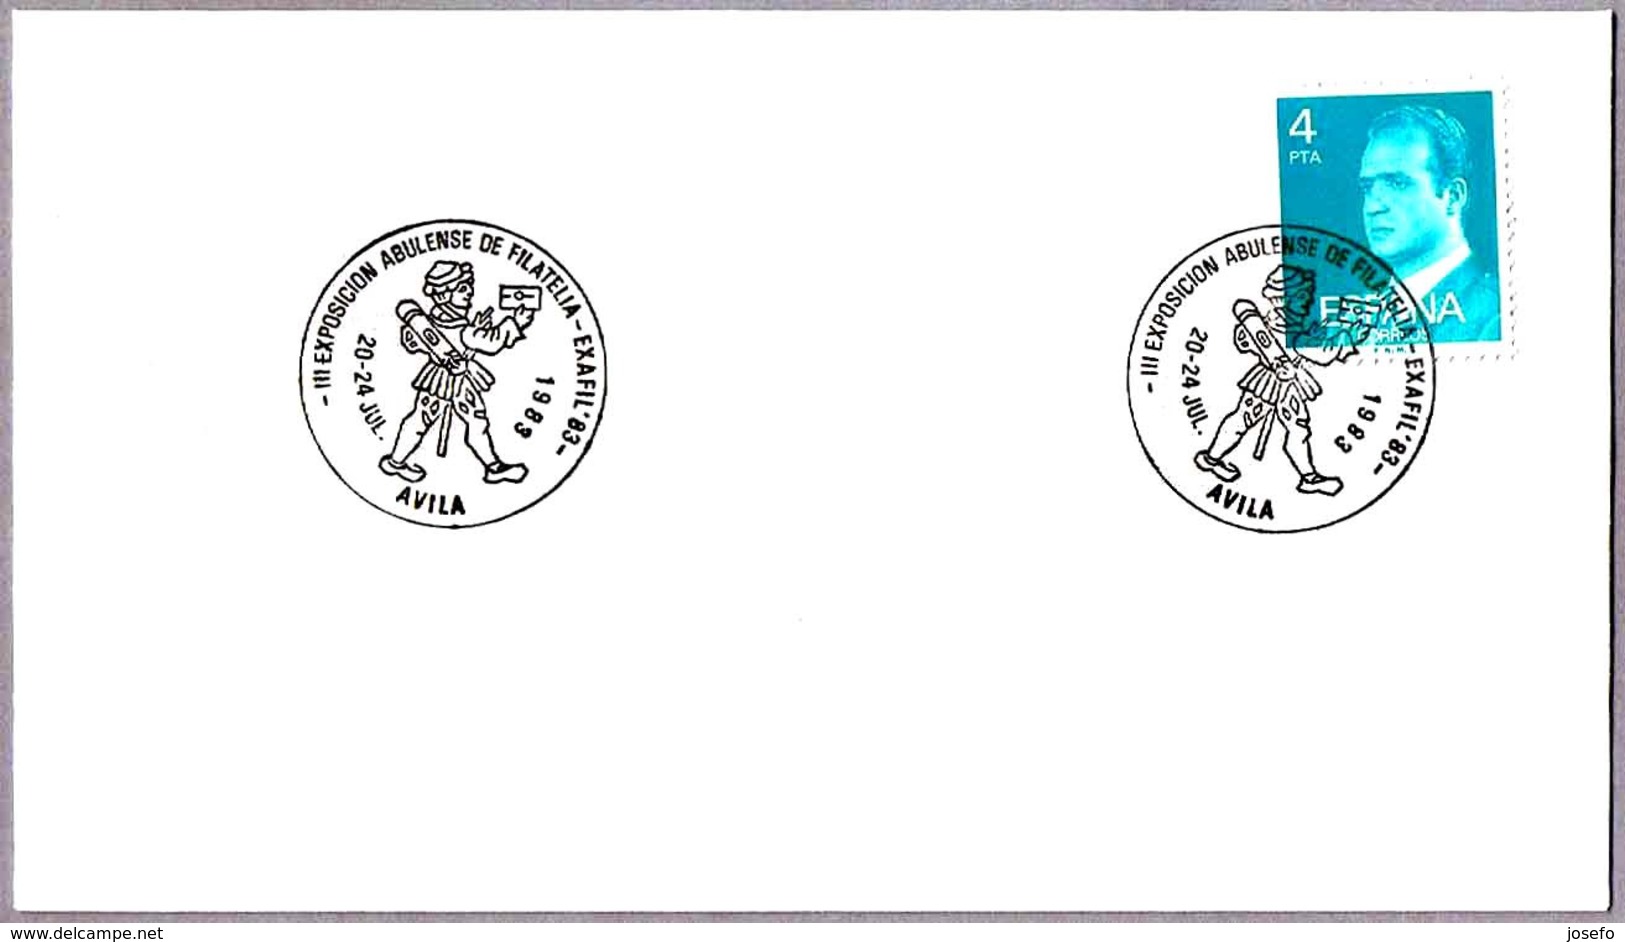 Matasellos III EXP. ABULENSE DE FILATELIA. MENSAJERO POSTAL - Postal Messenger. Avila 1983 - Correo Postal